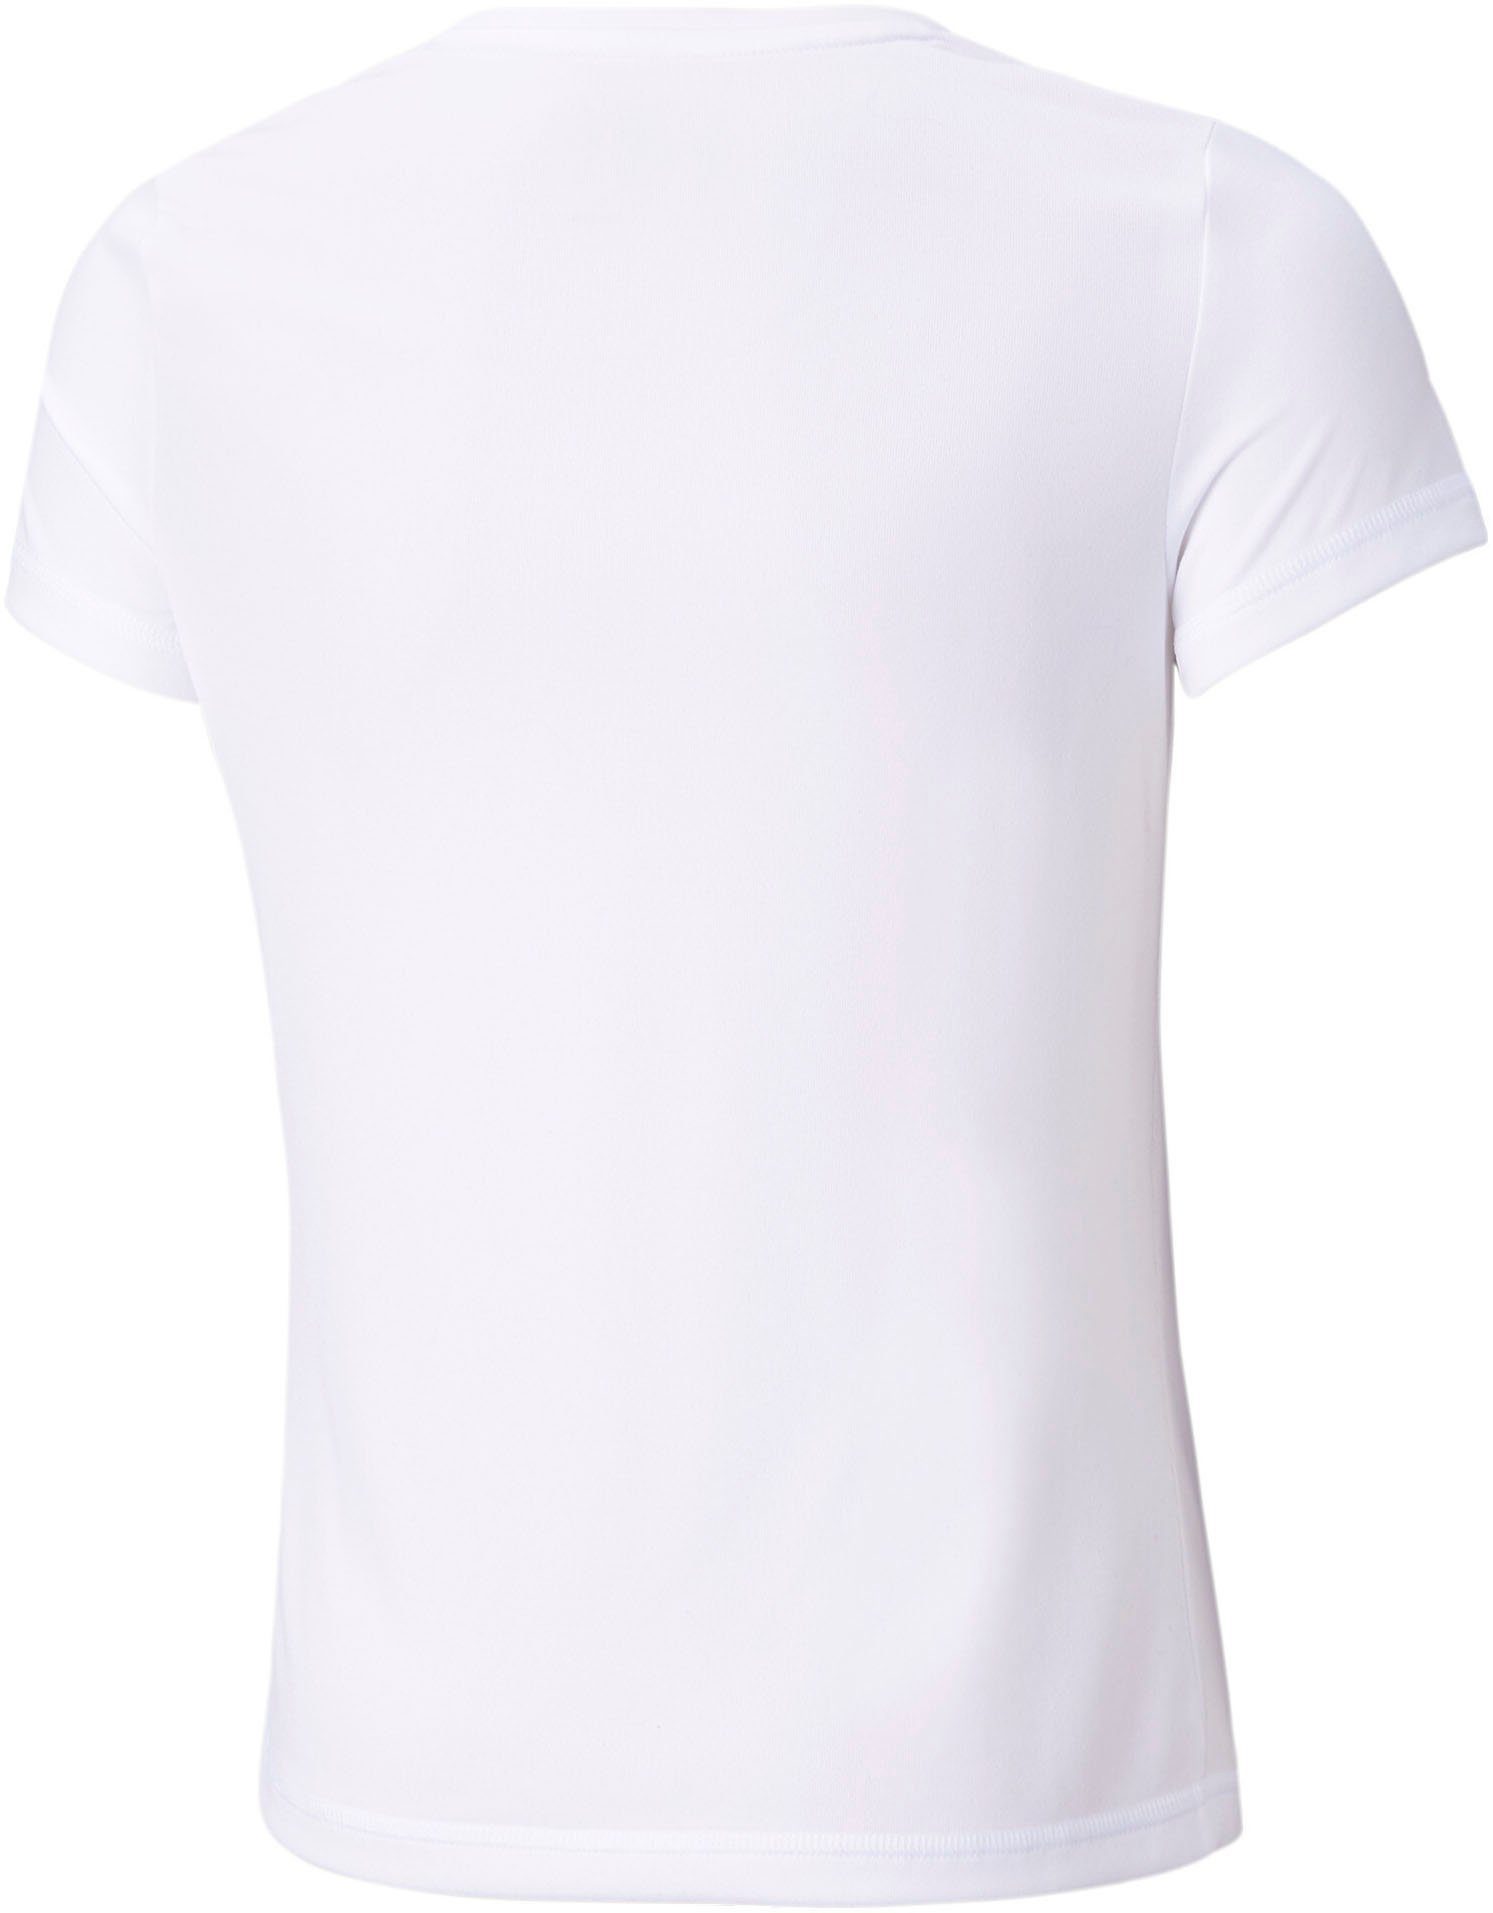 PUMA T-Shirt ACTIVE TEE White Puma G